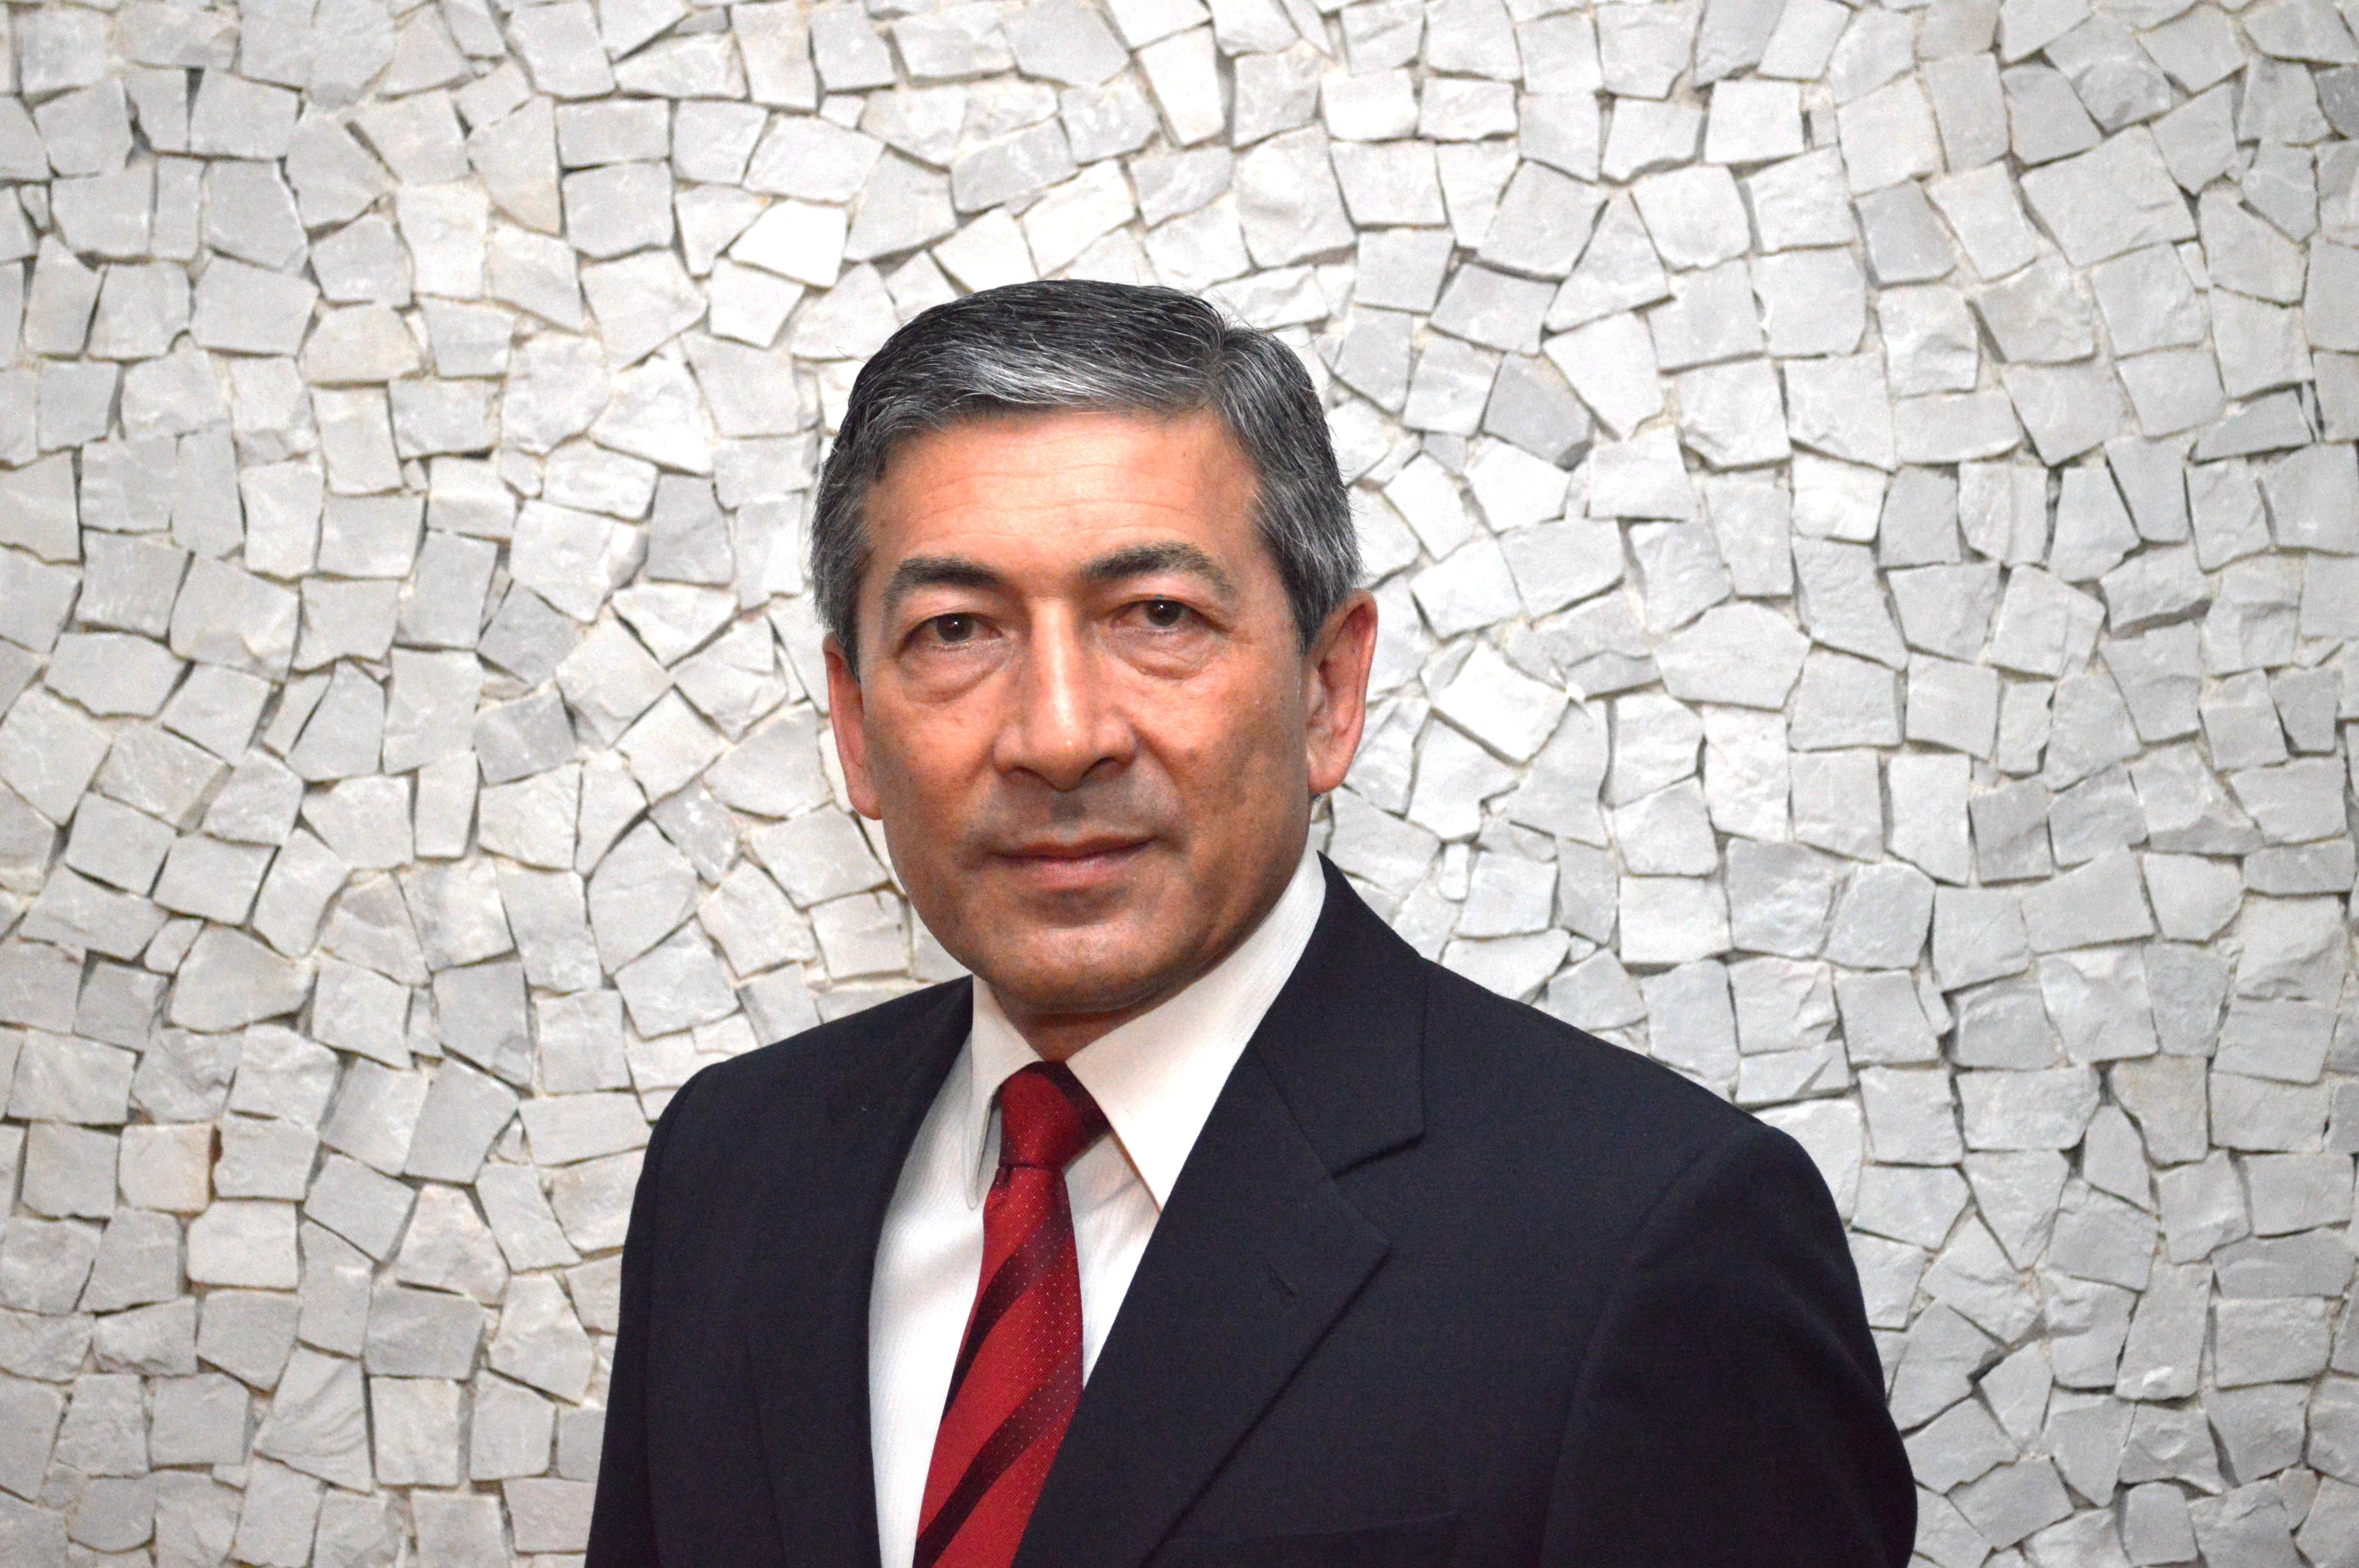 Ronaldo Araki es Vicepresidente de Service Delivery de Unisys para Latinoamérica